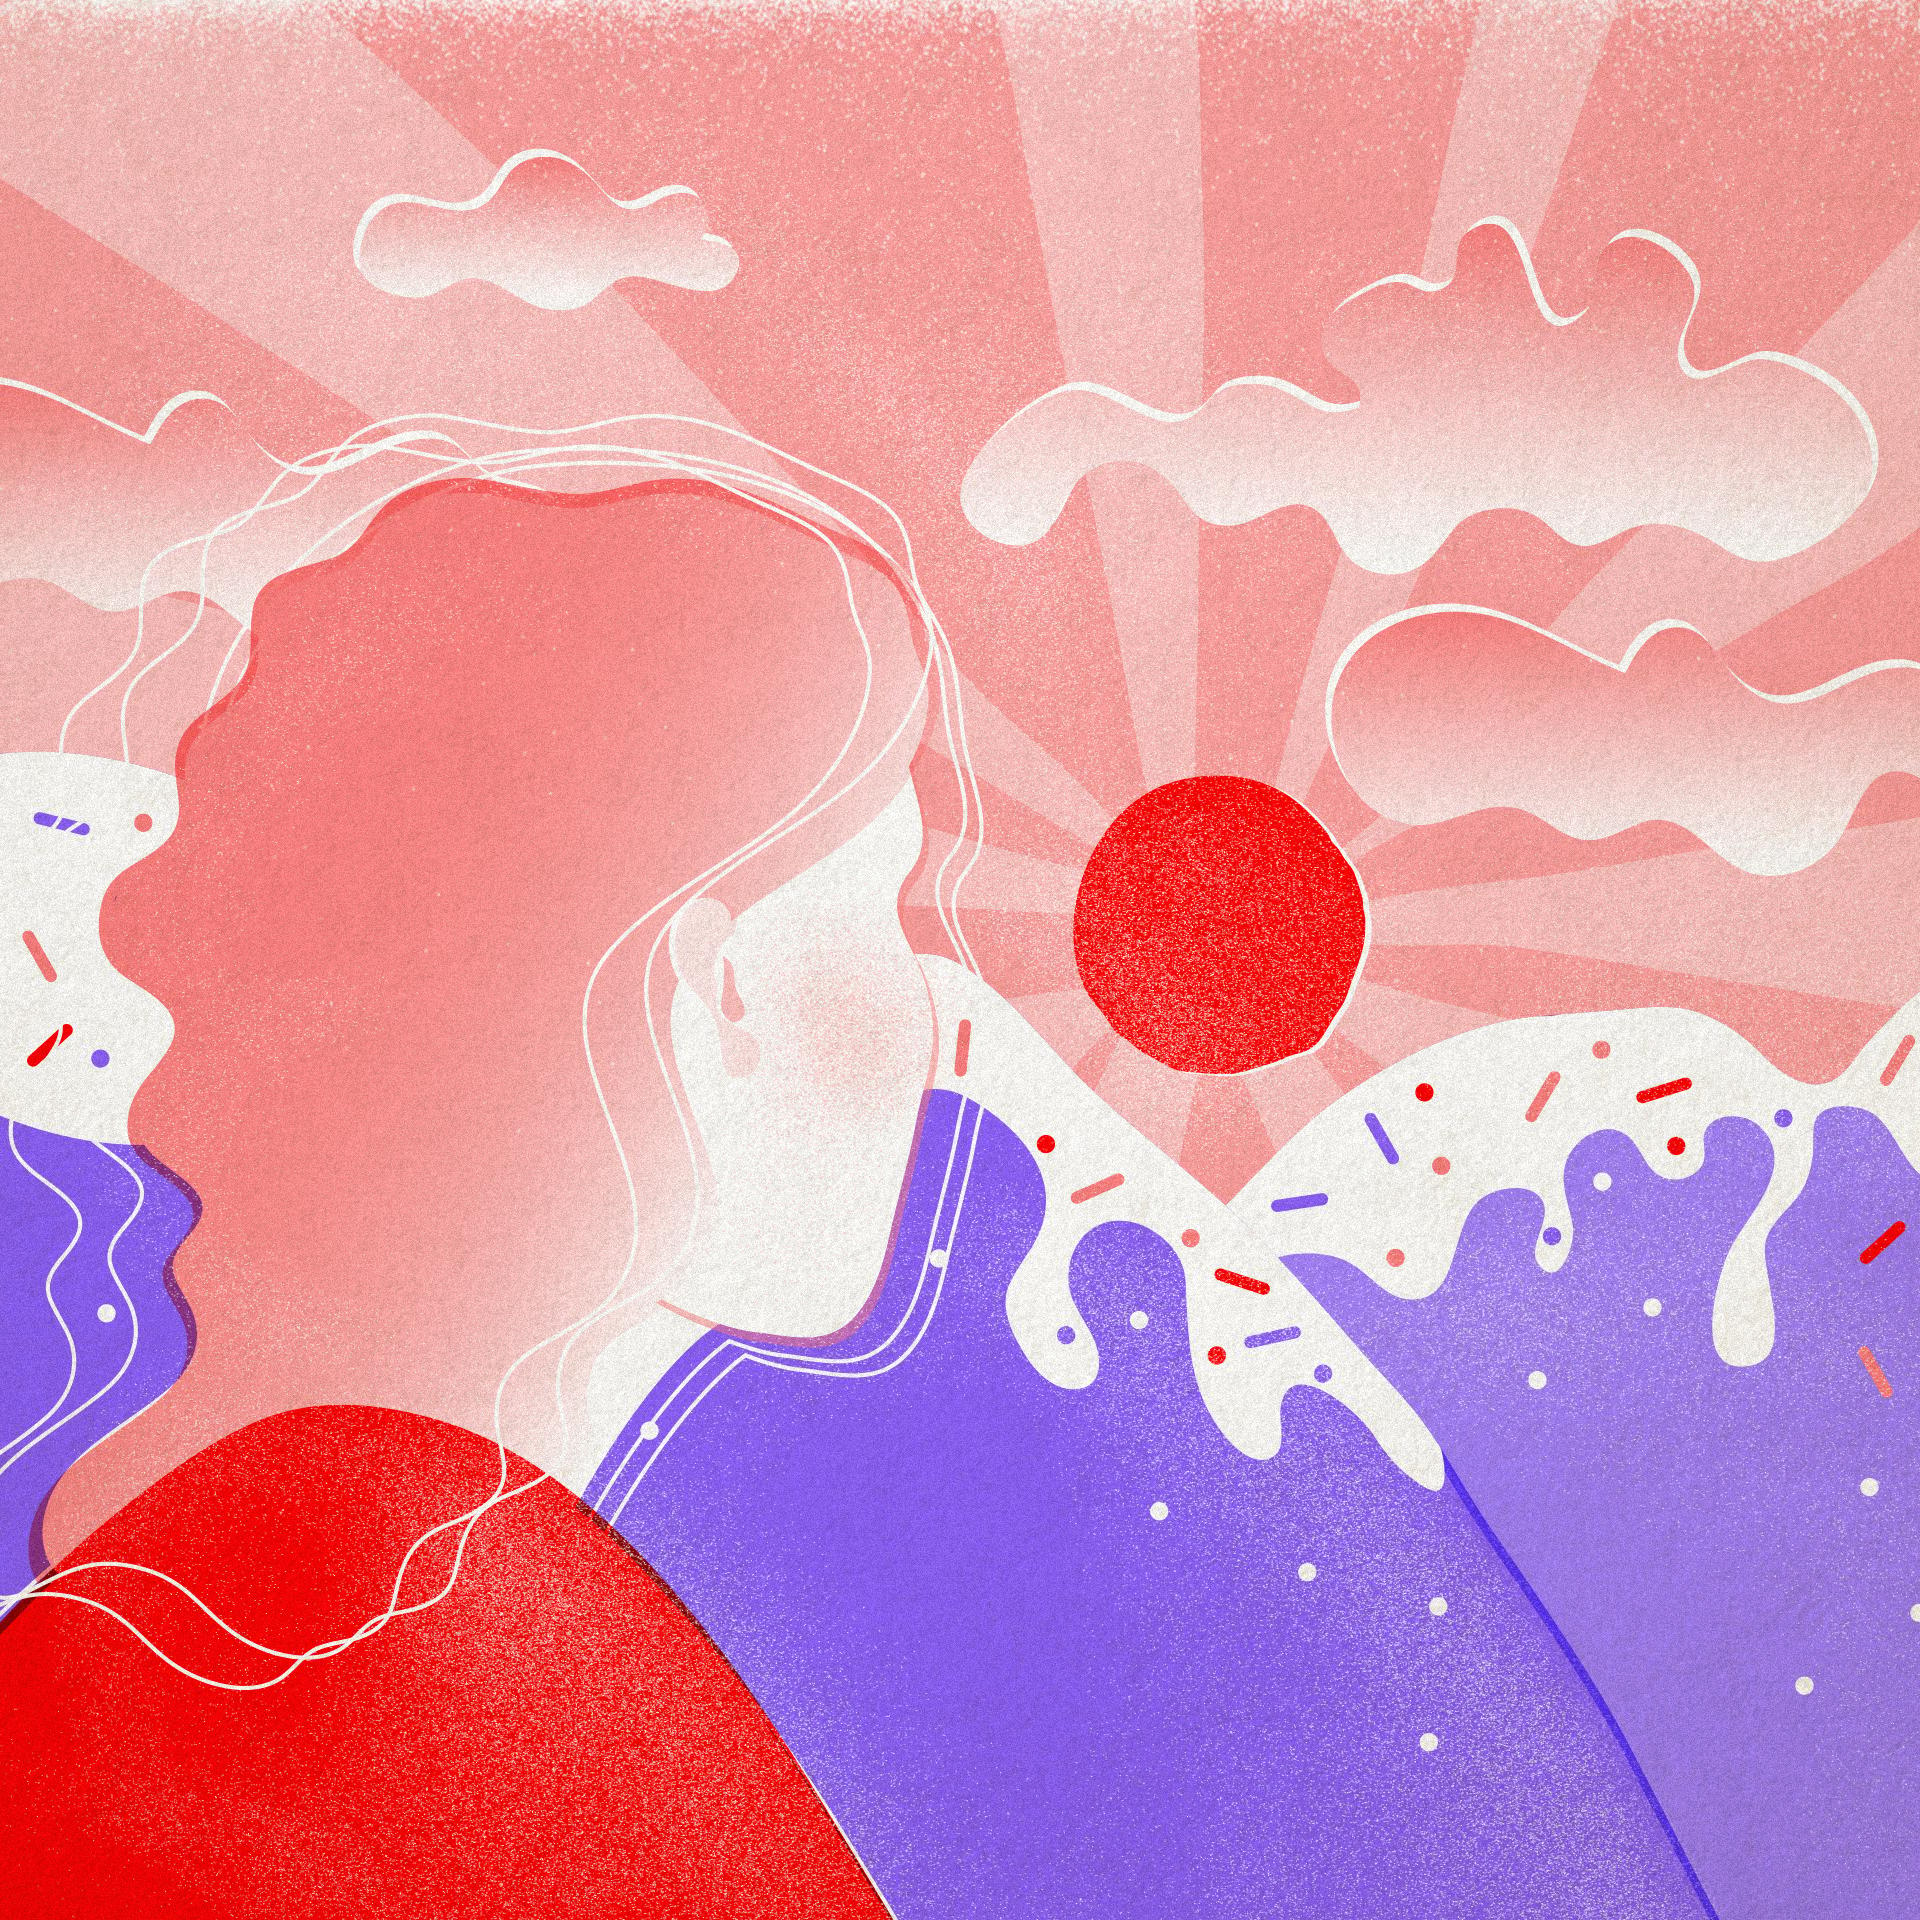 ilustracja przedstawia kobiecą postać wpatrującą się w czerwone słońce za fioletowymi górami